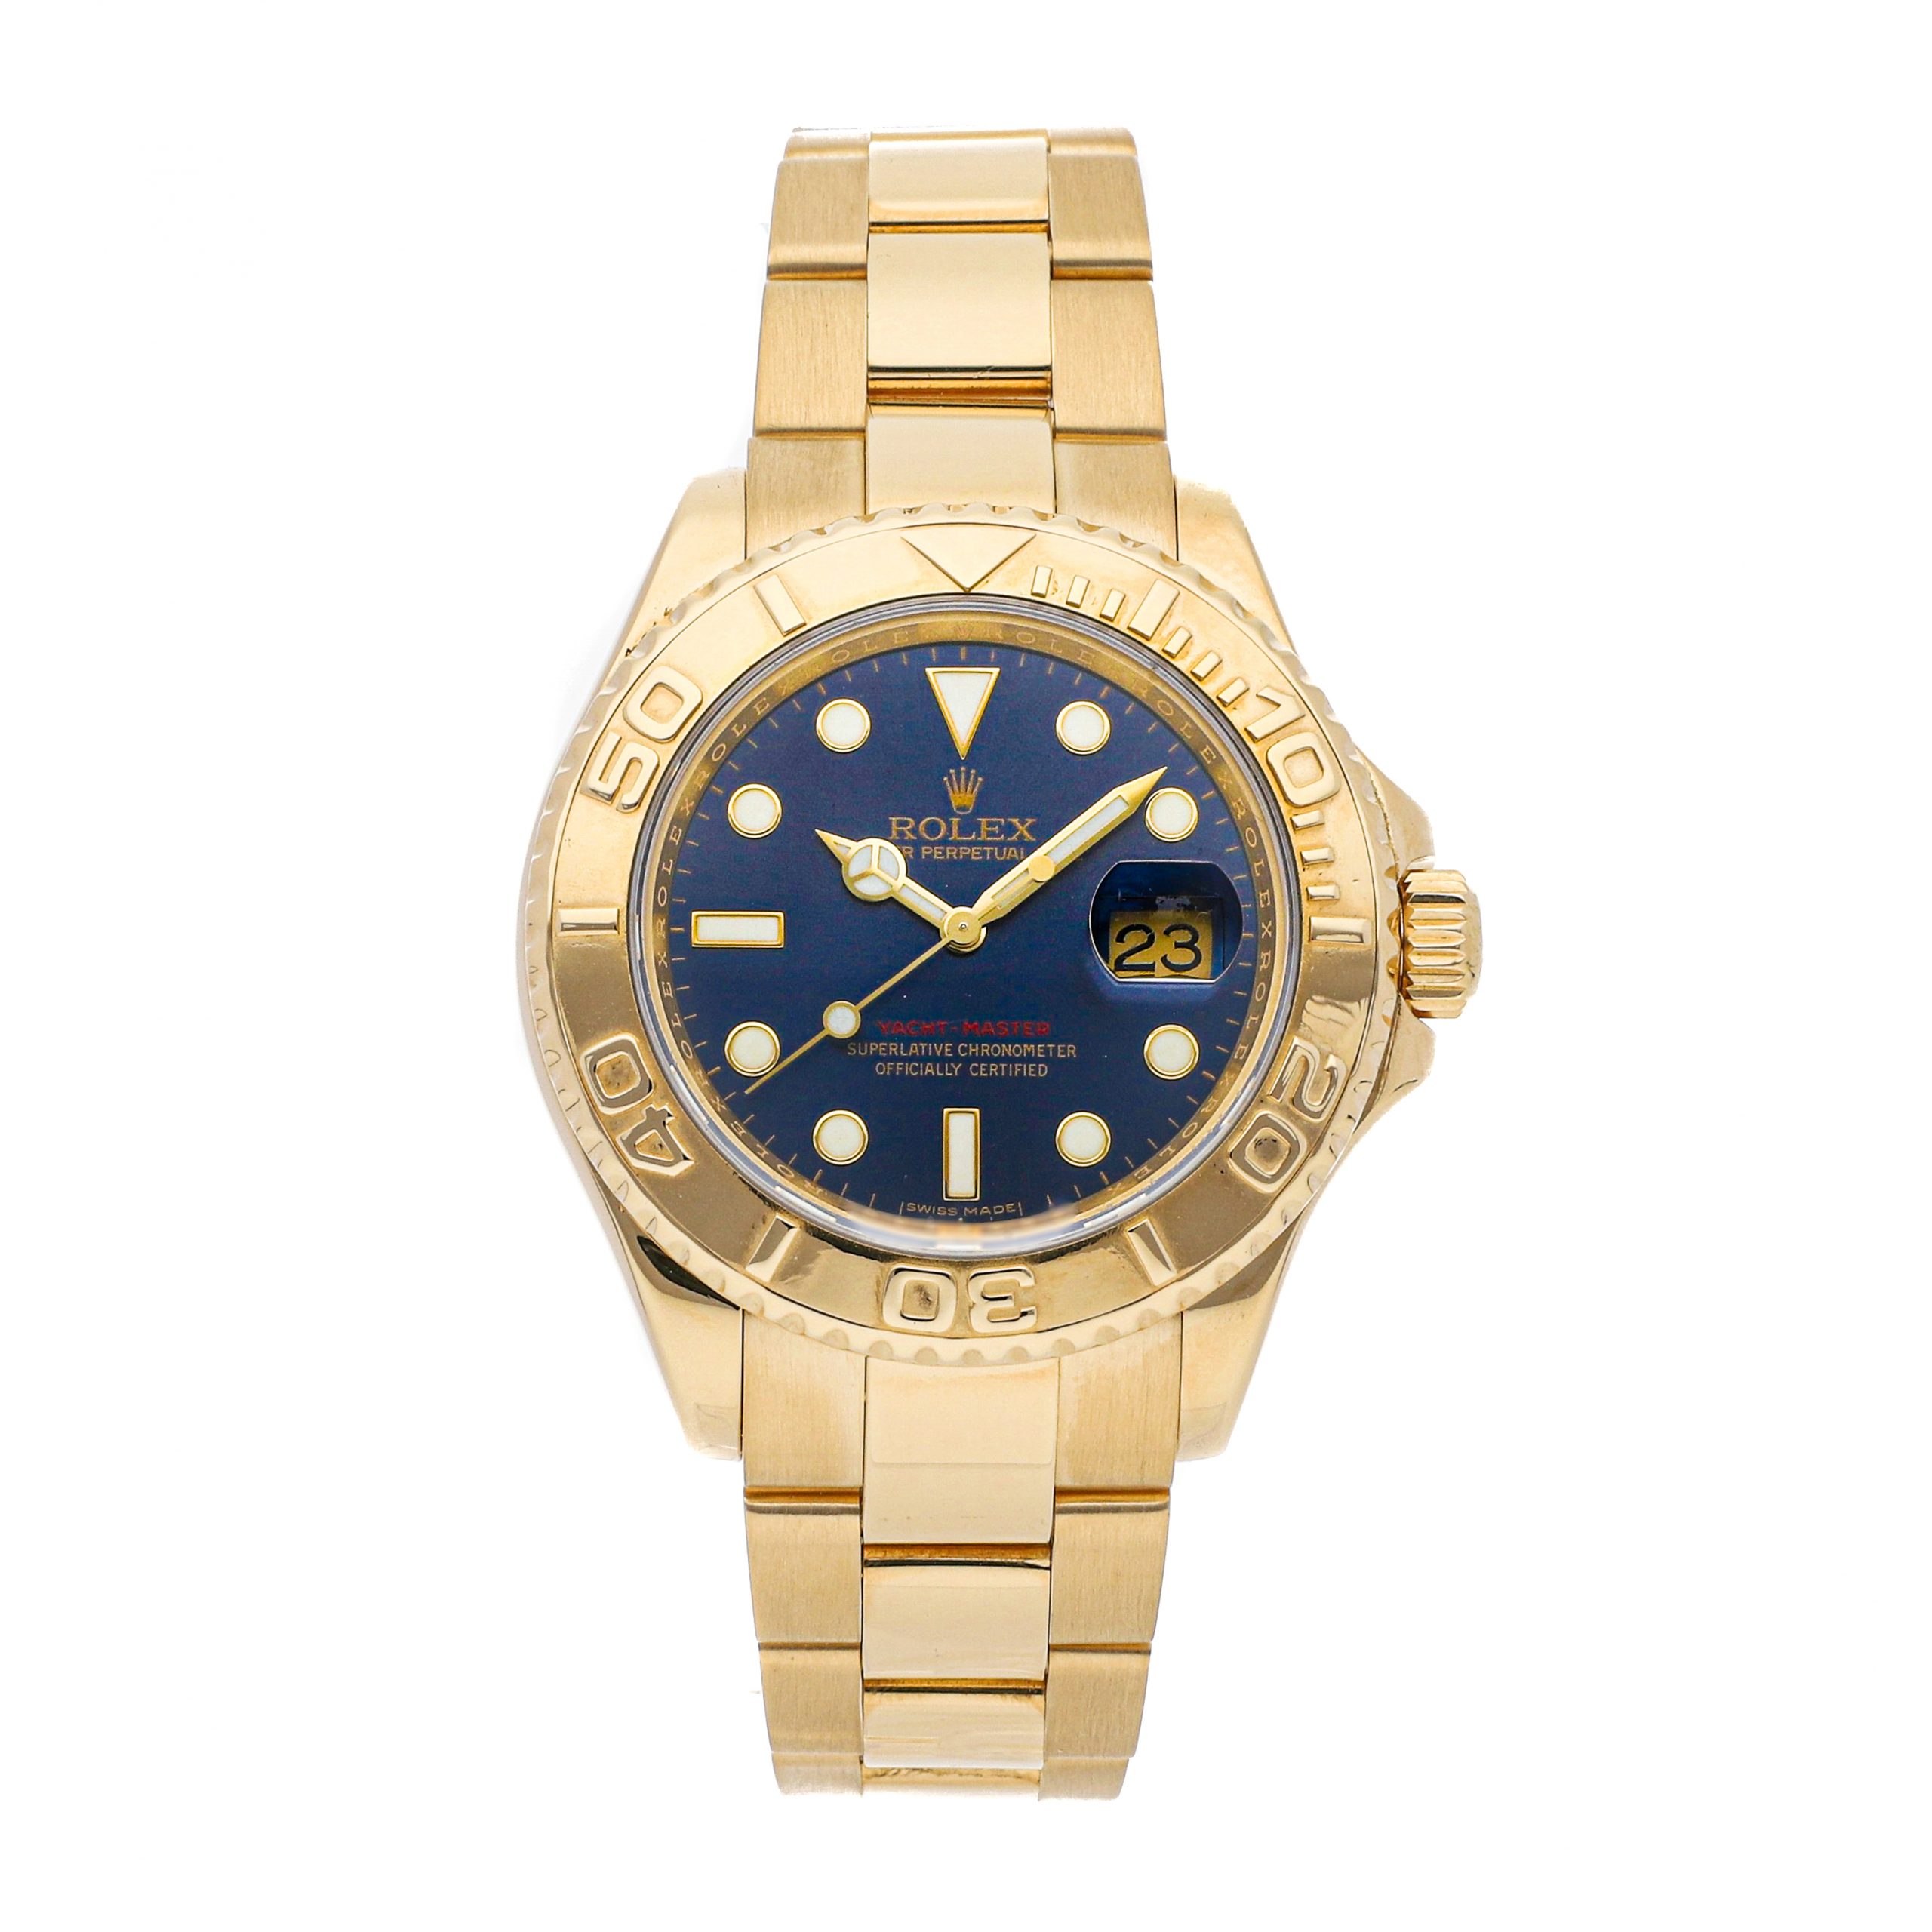 Imitation Rolex Watches Rolex Yacht-master 16628